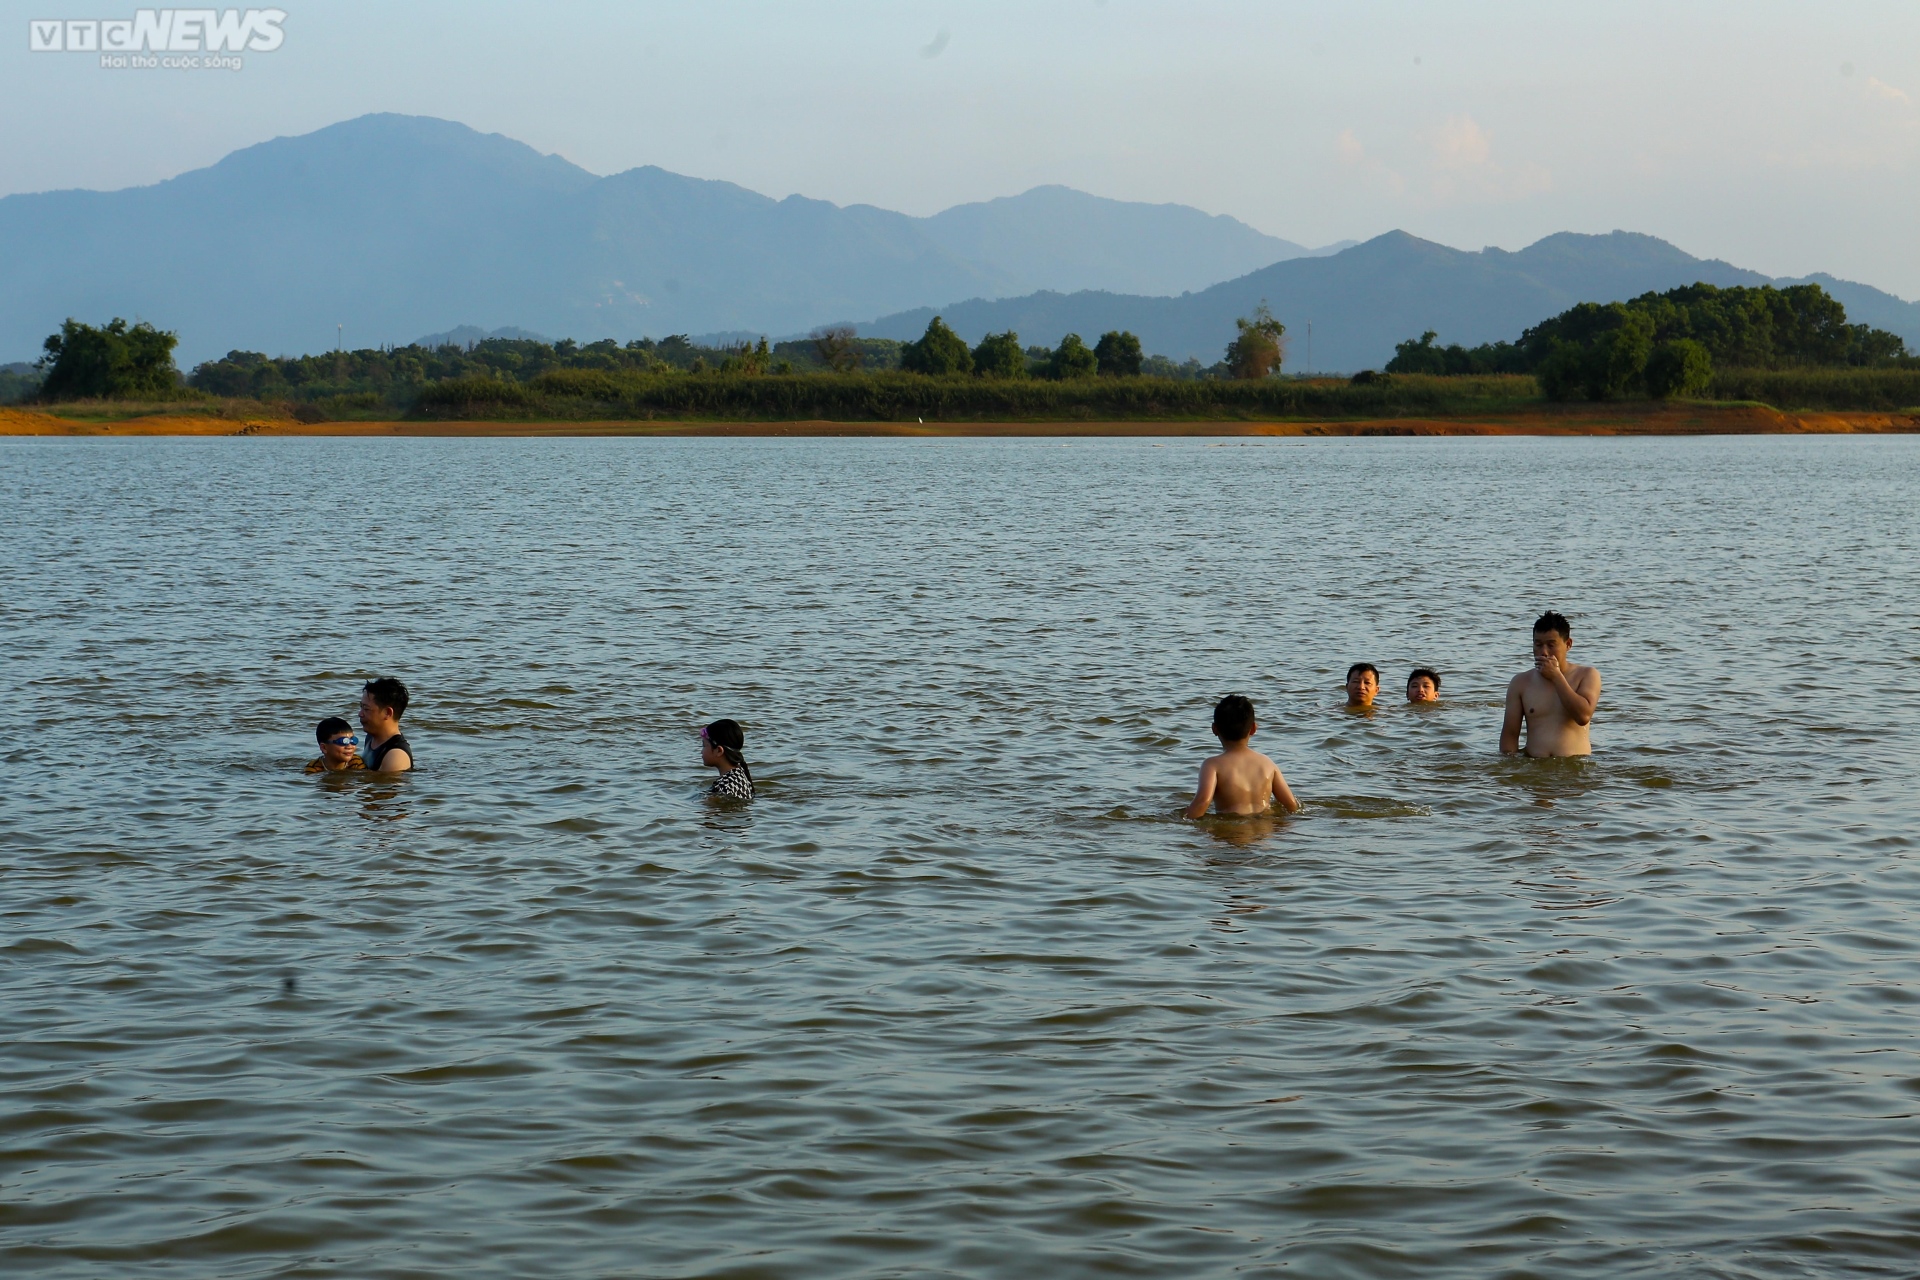 Chiều hè đổ lửa, người dân Hà Nội tìm sông hồ giải nhiệt - ảnh 1